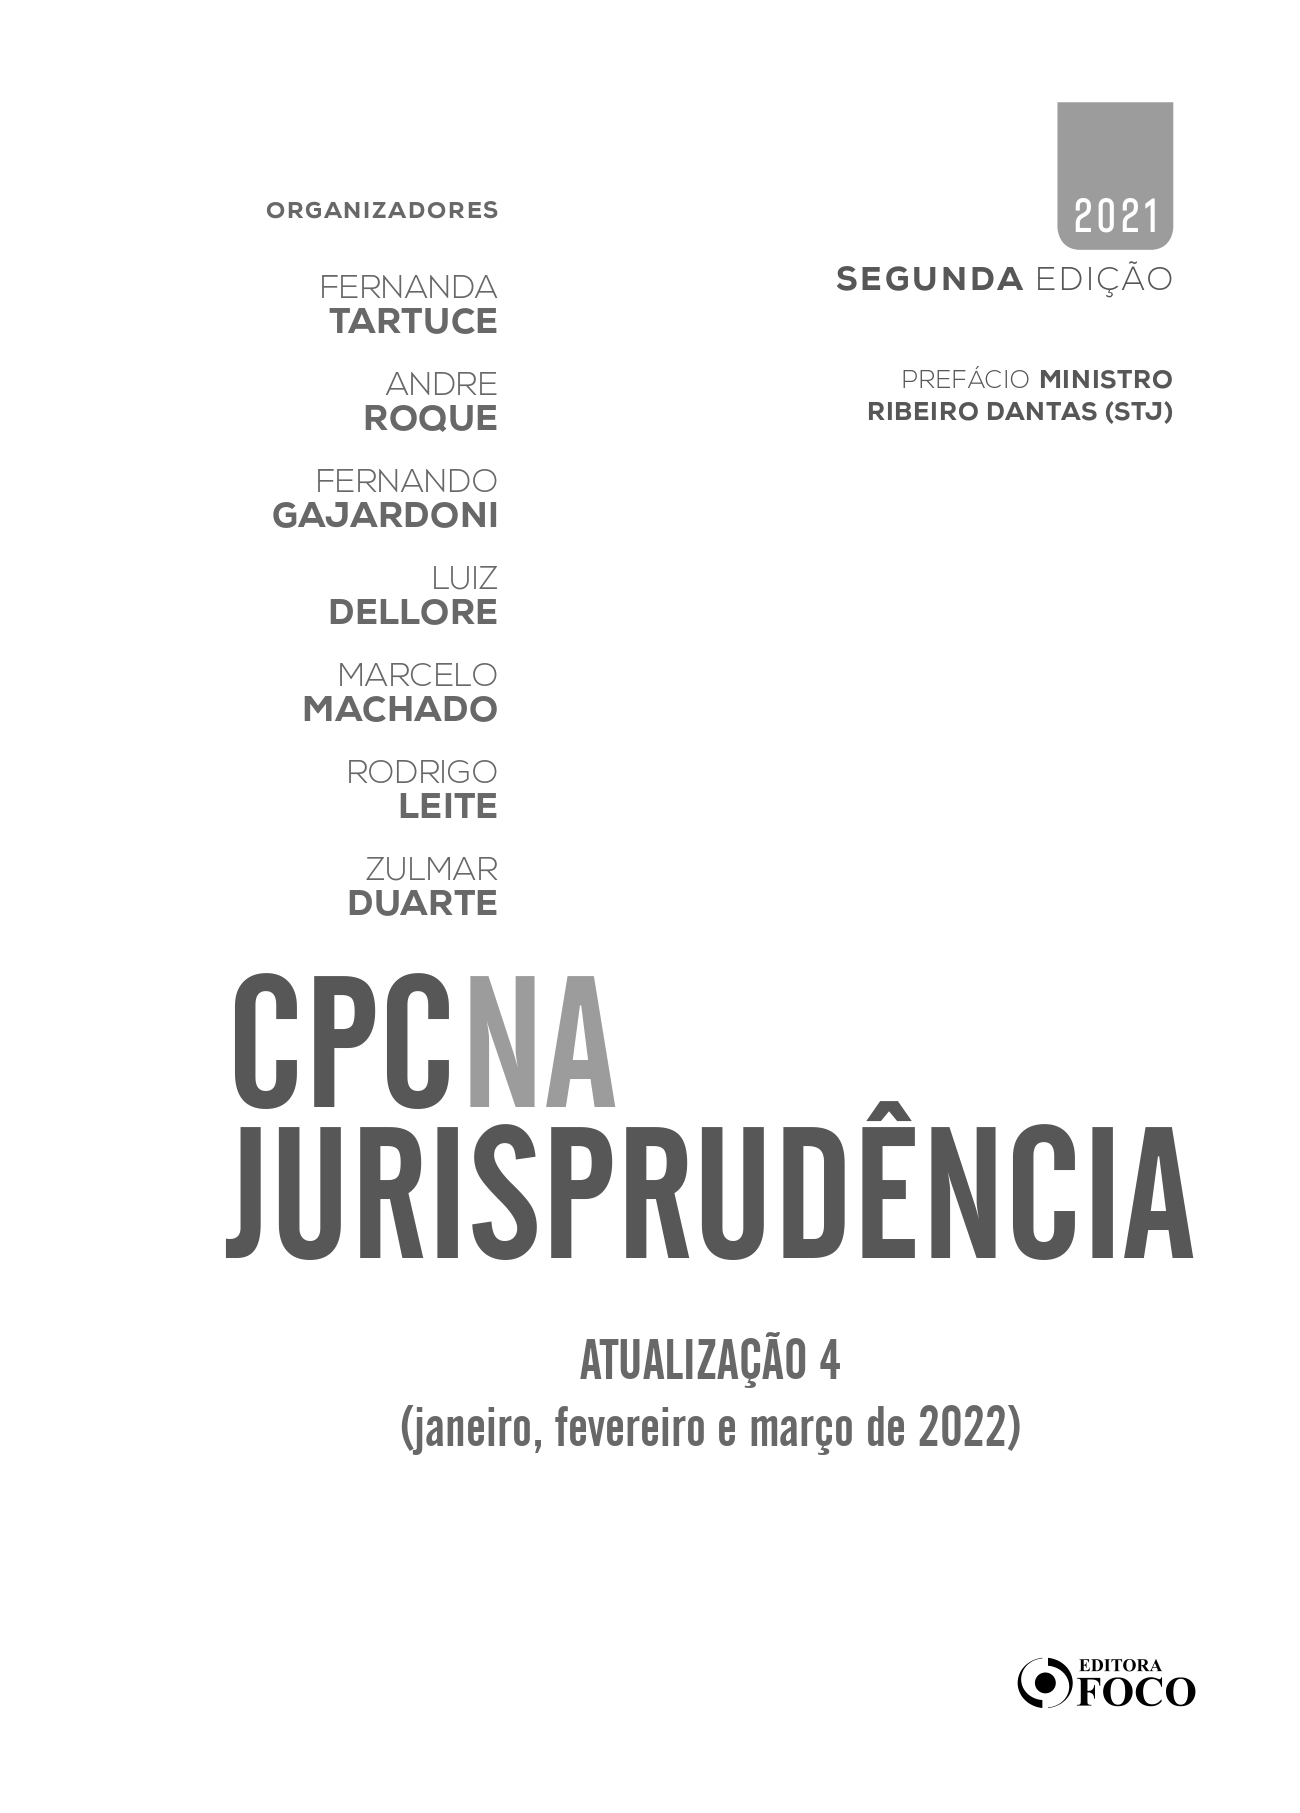 Atualização 04 | CPC na Jurisprudência | Editora Foco